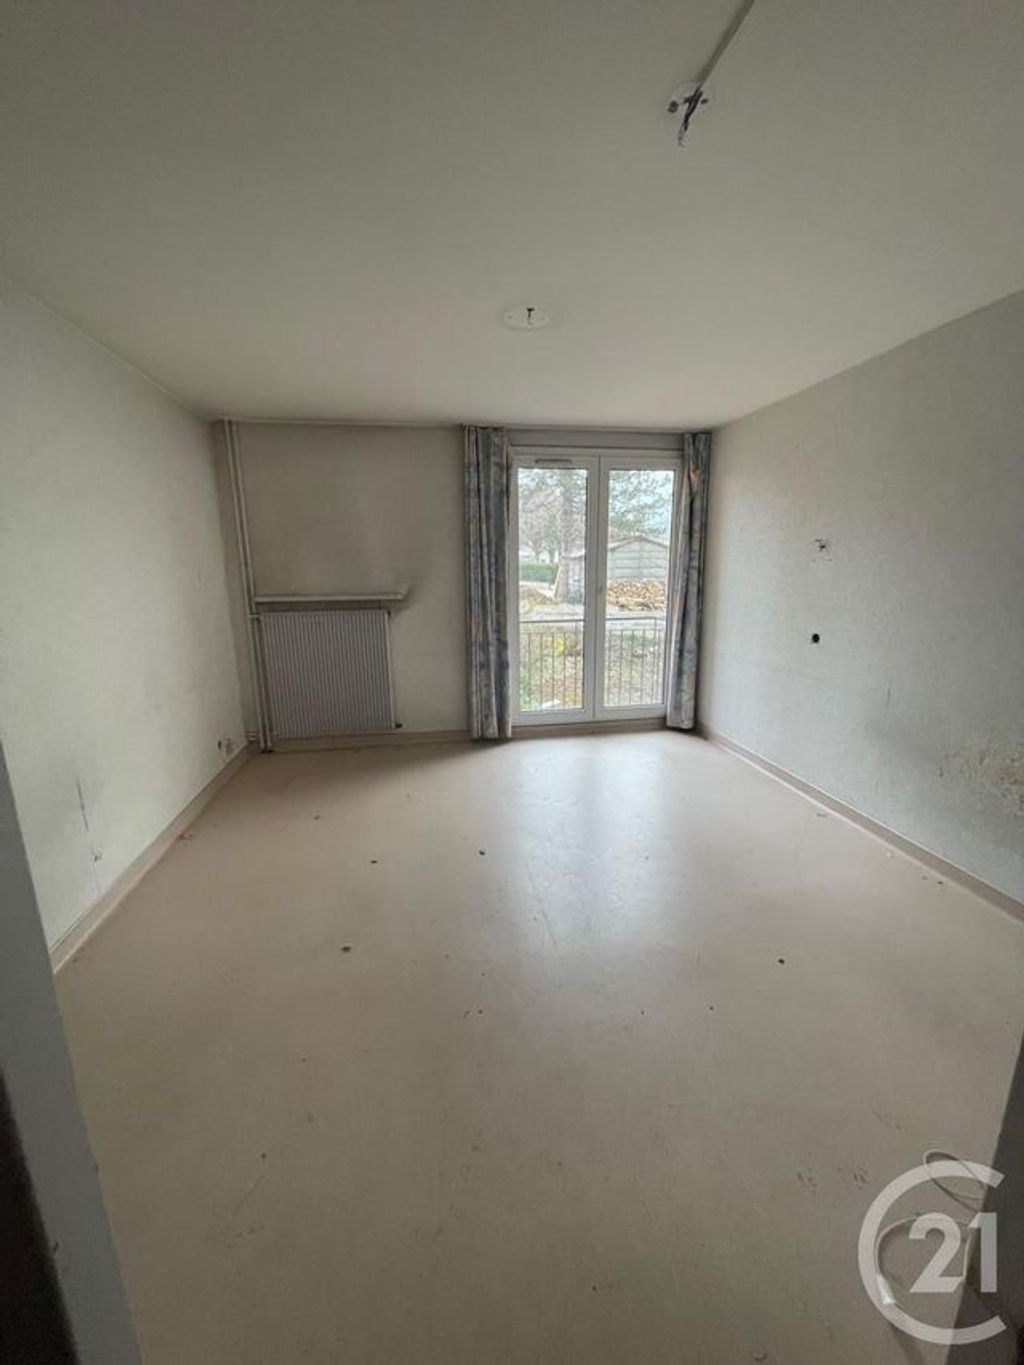 Achat appartement 8 pièces 150 m² - Beaucourt